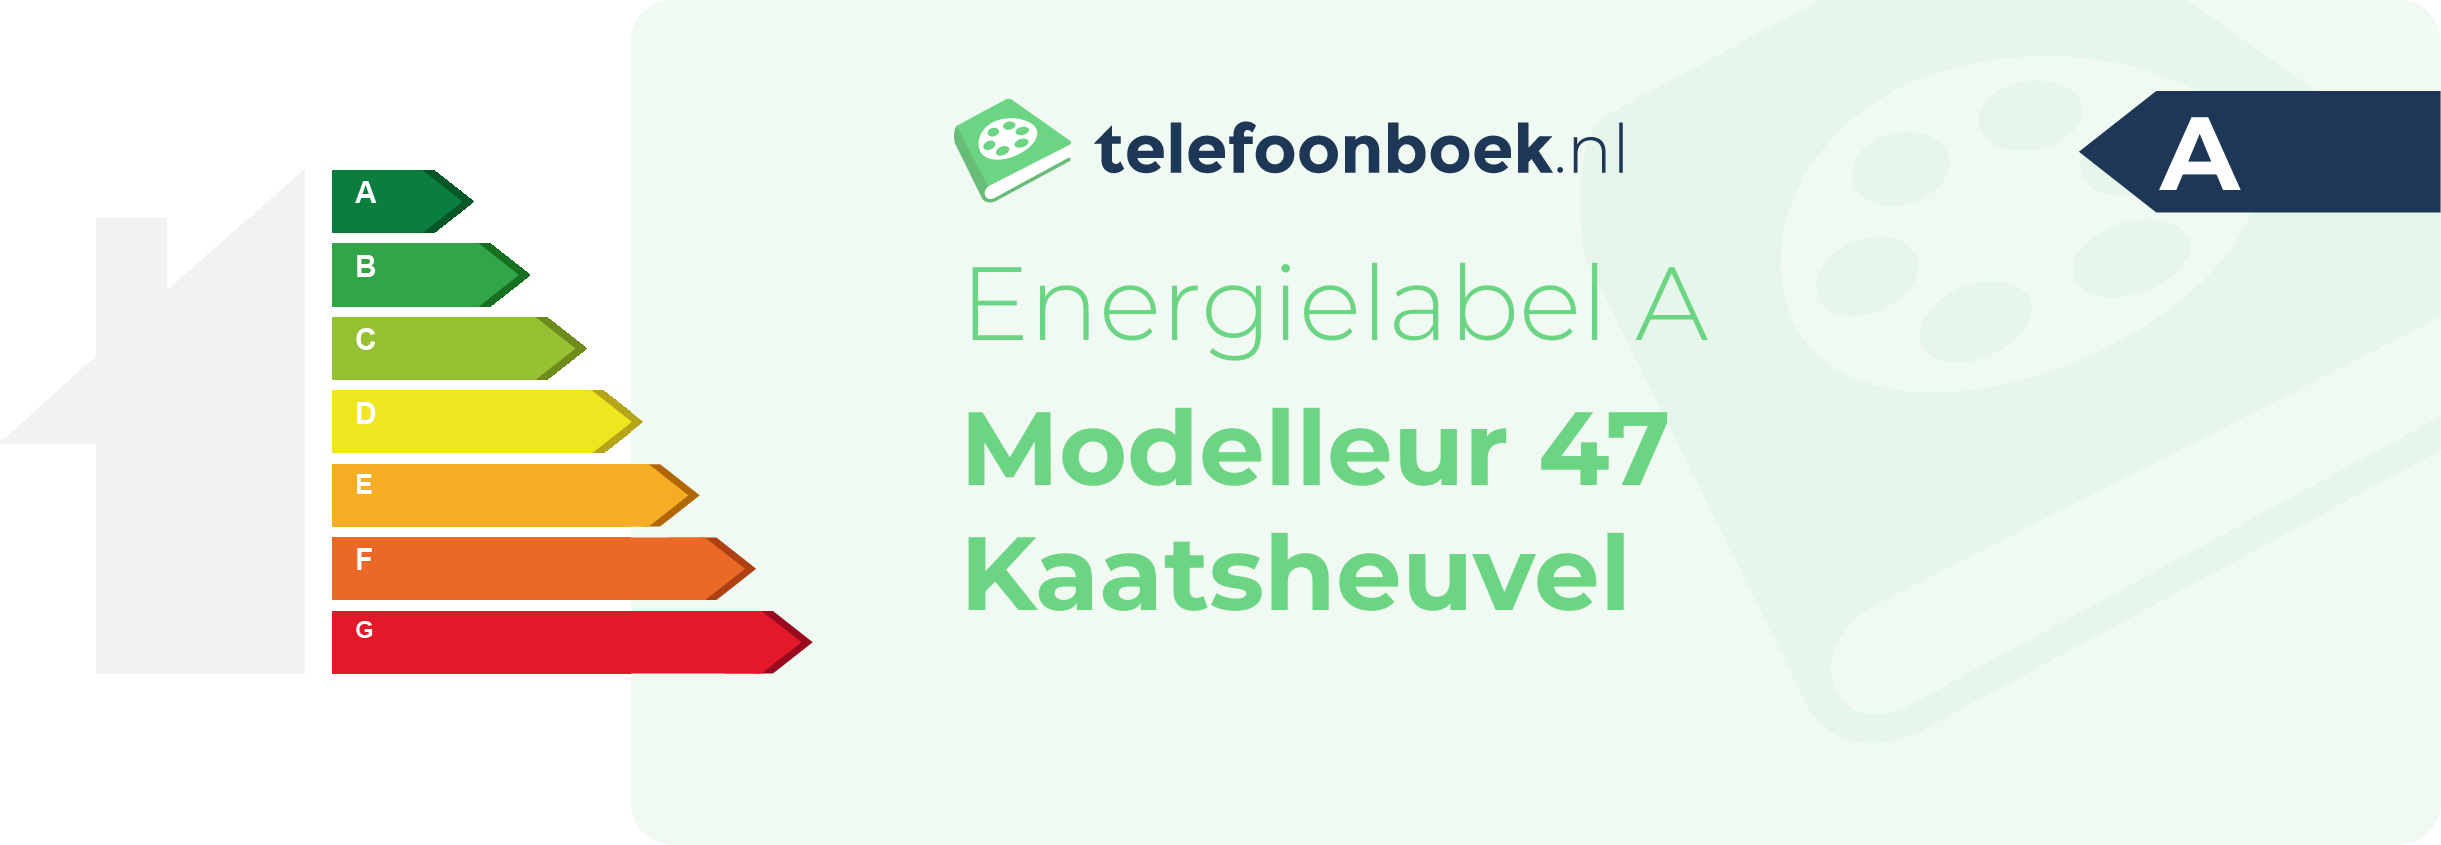 Energielabel Modelleur 47 Kaatsheuvel